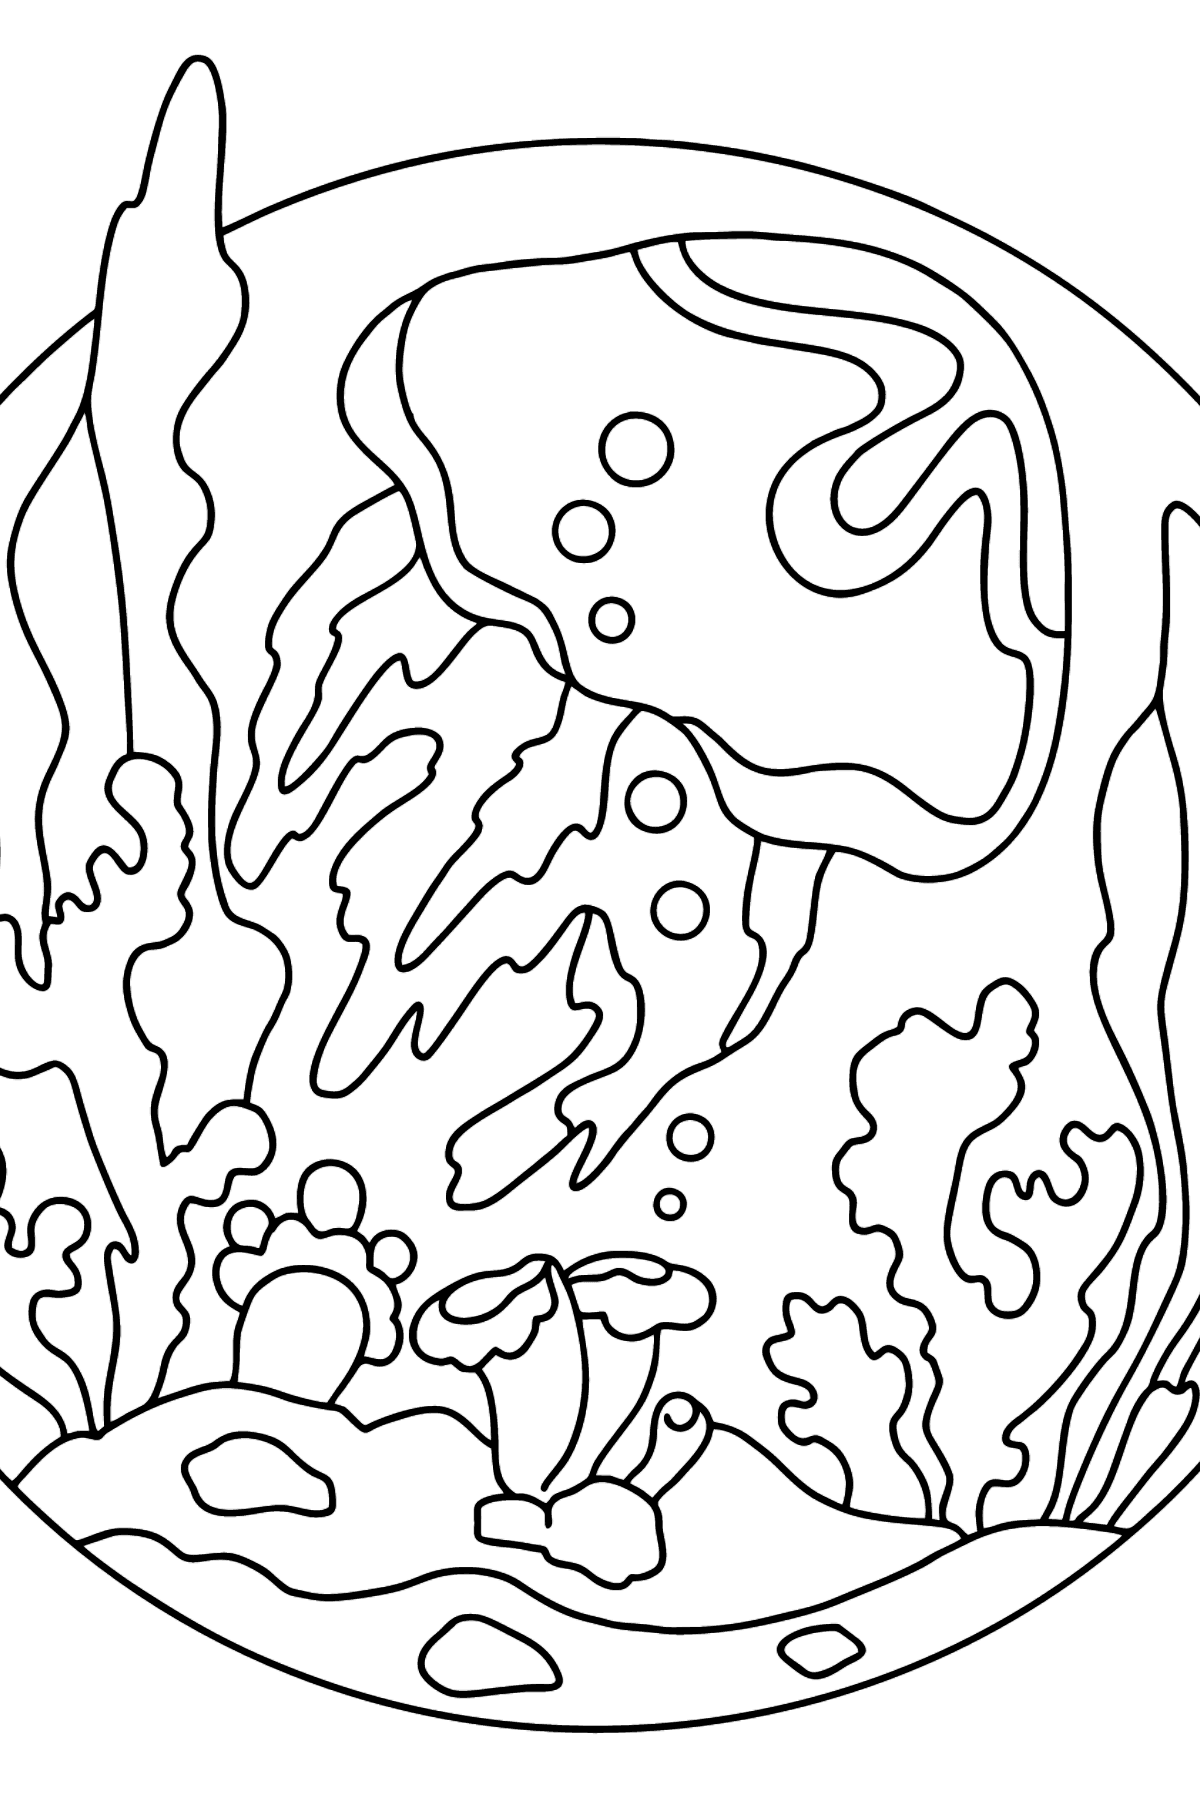 Медуза раскраска (сложная) - Картинки для Детей